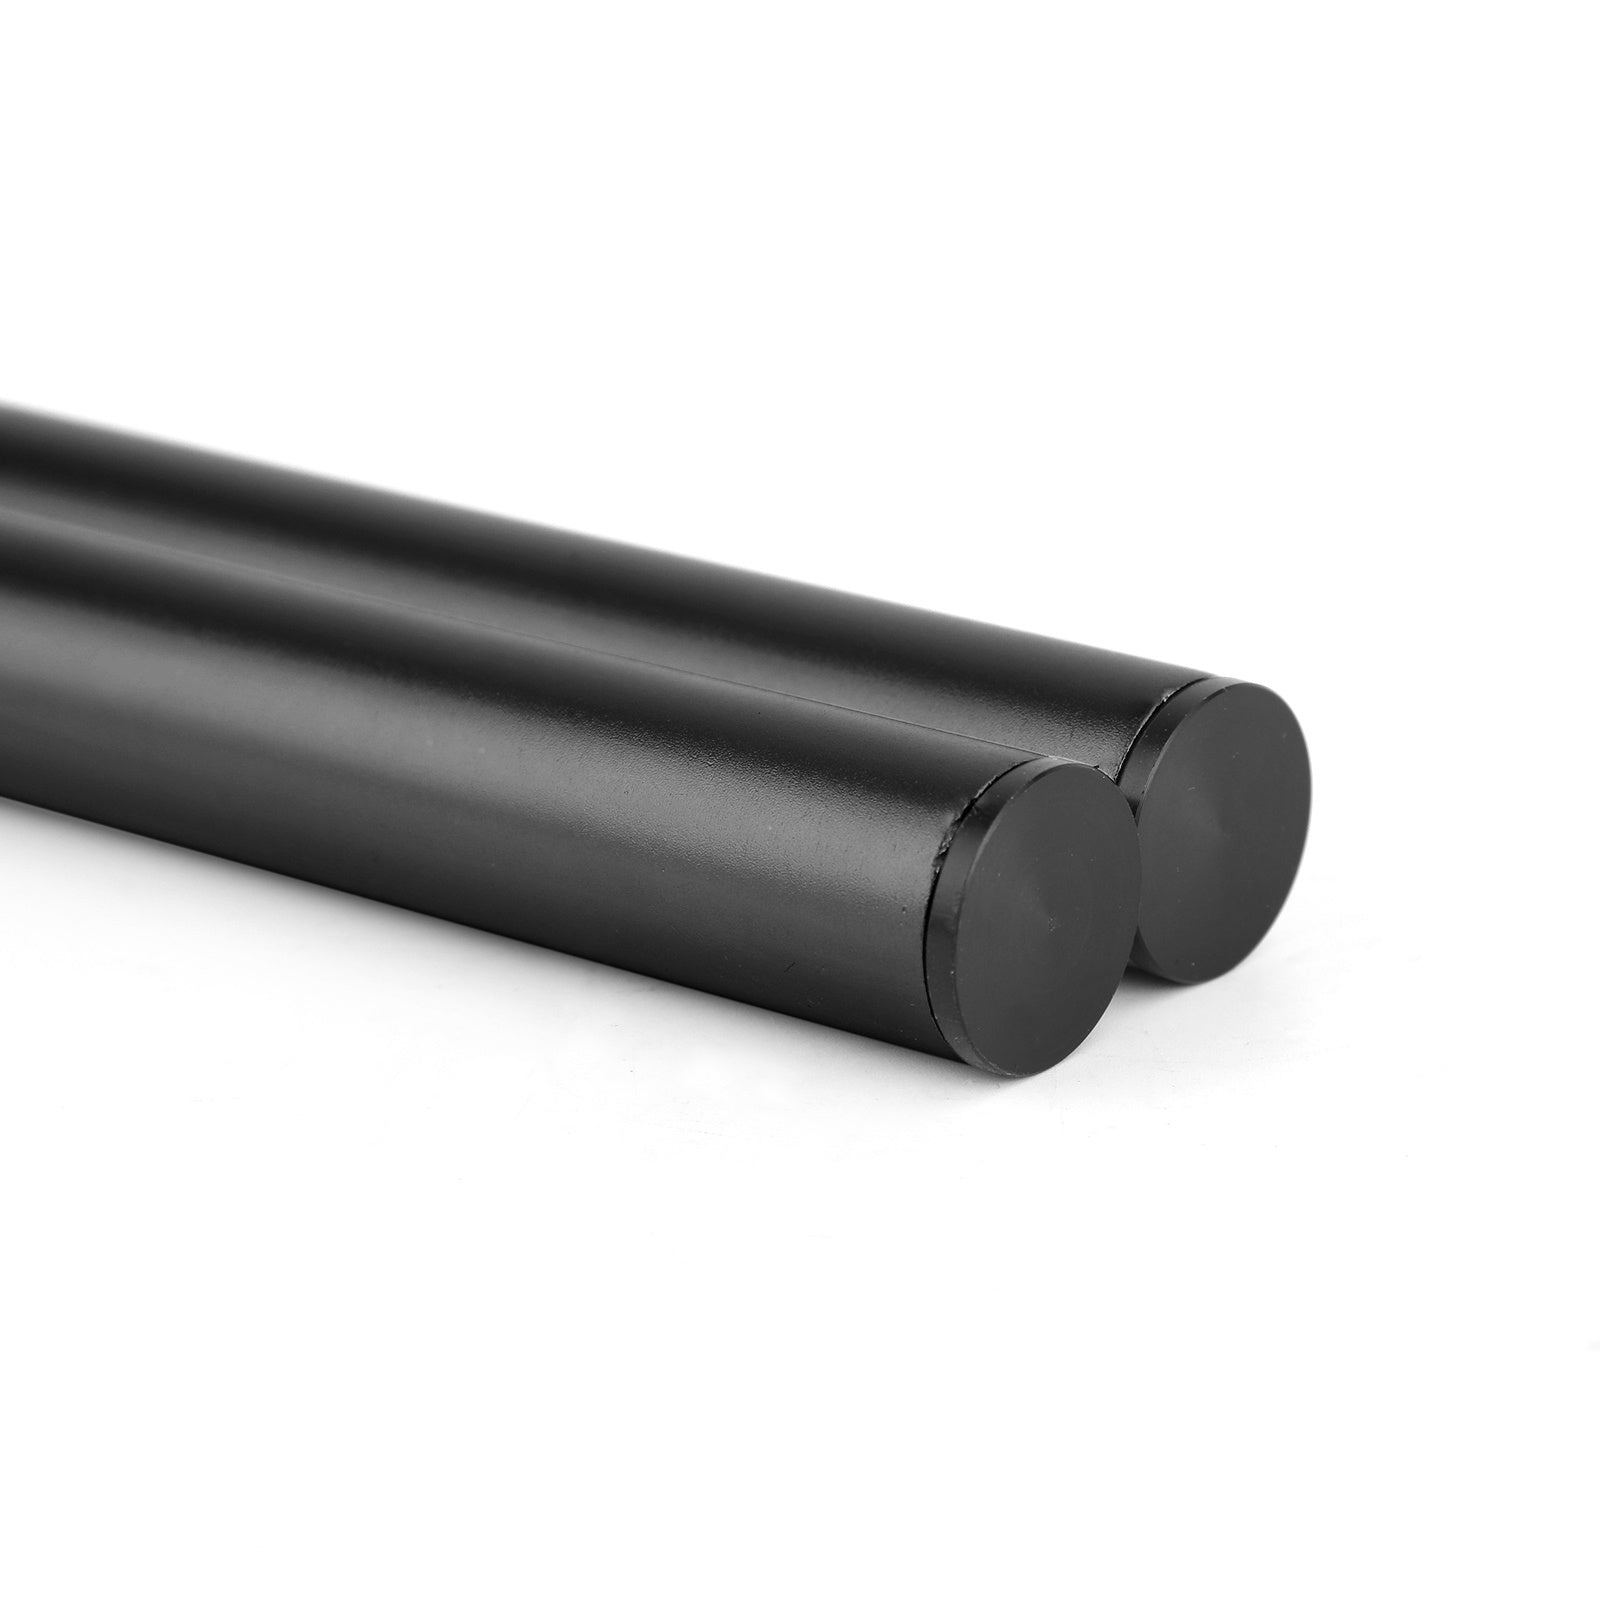 Kit manubrio tubo forcella universale regolabile girevole in billet CNC da 47 mm